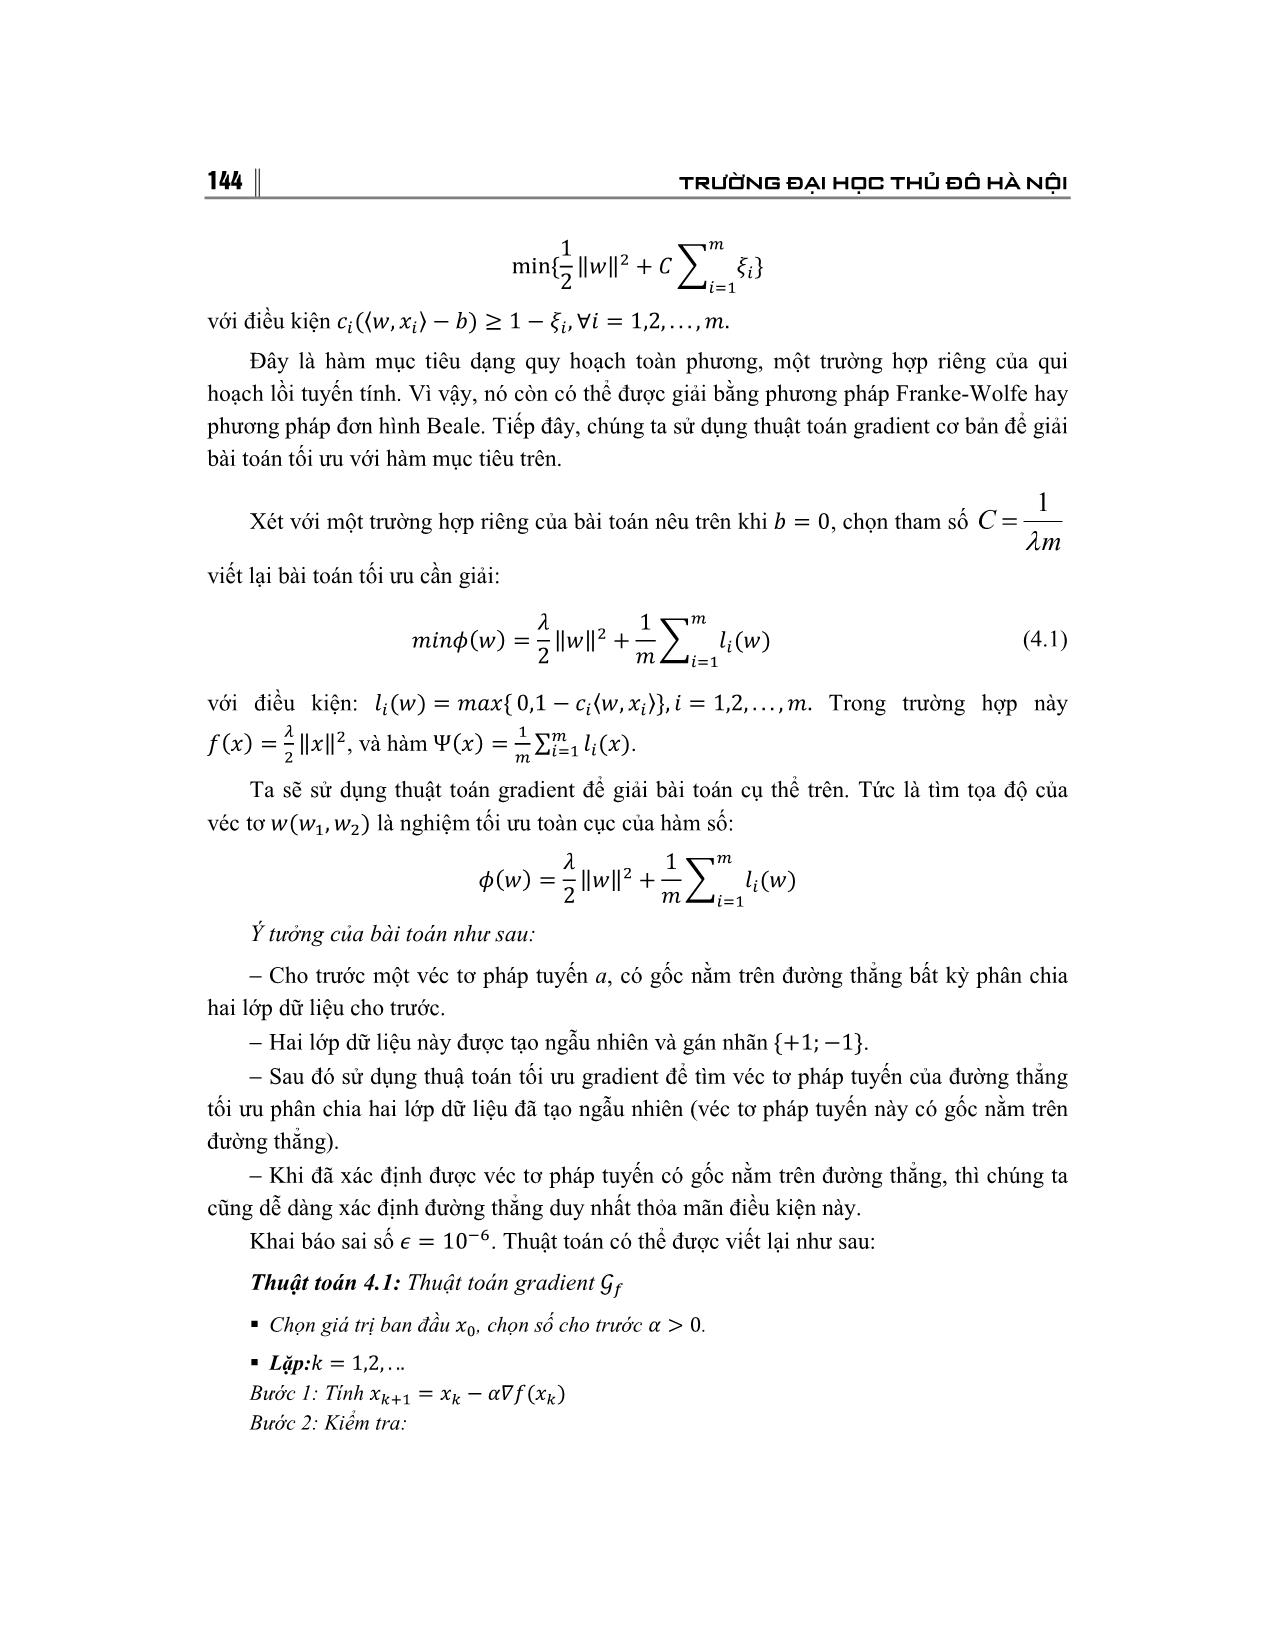 Giải bài toán tối ưu bằng phương pháp Gradient và ứng dụng trang 9